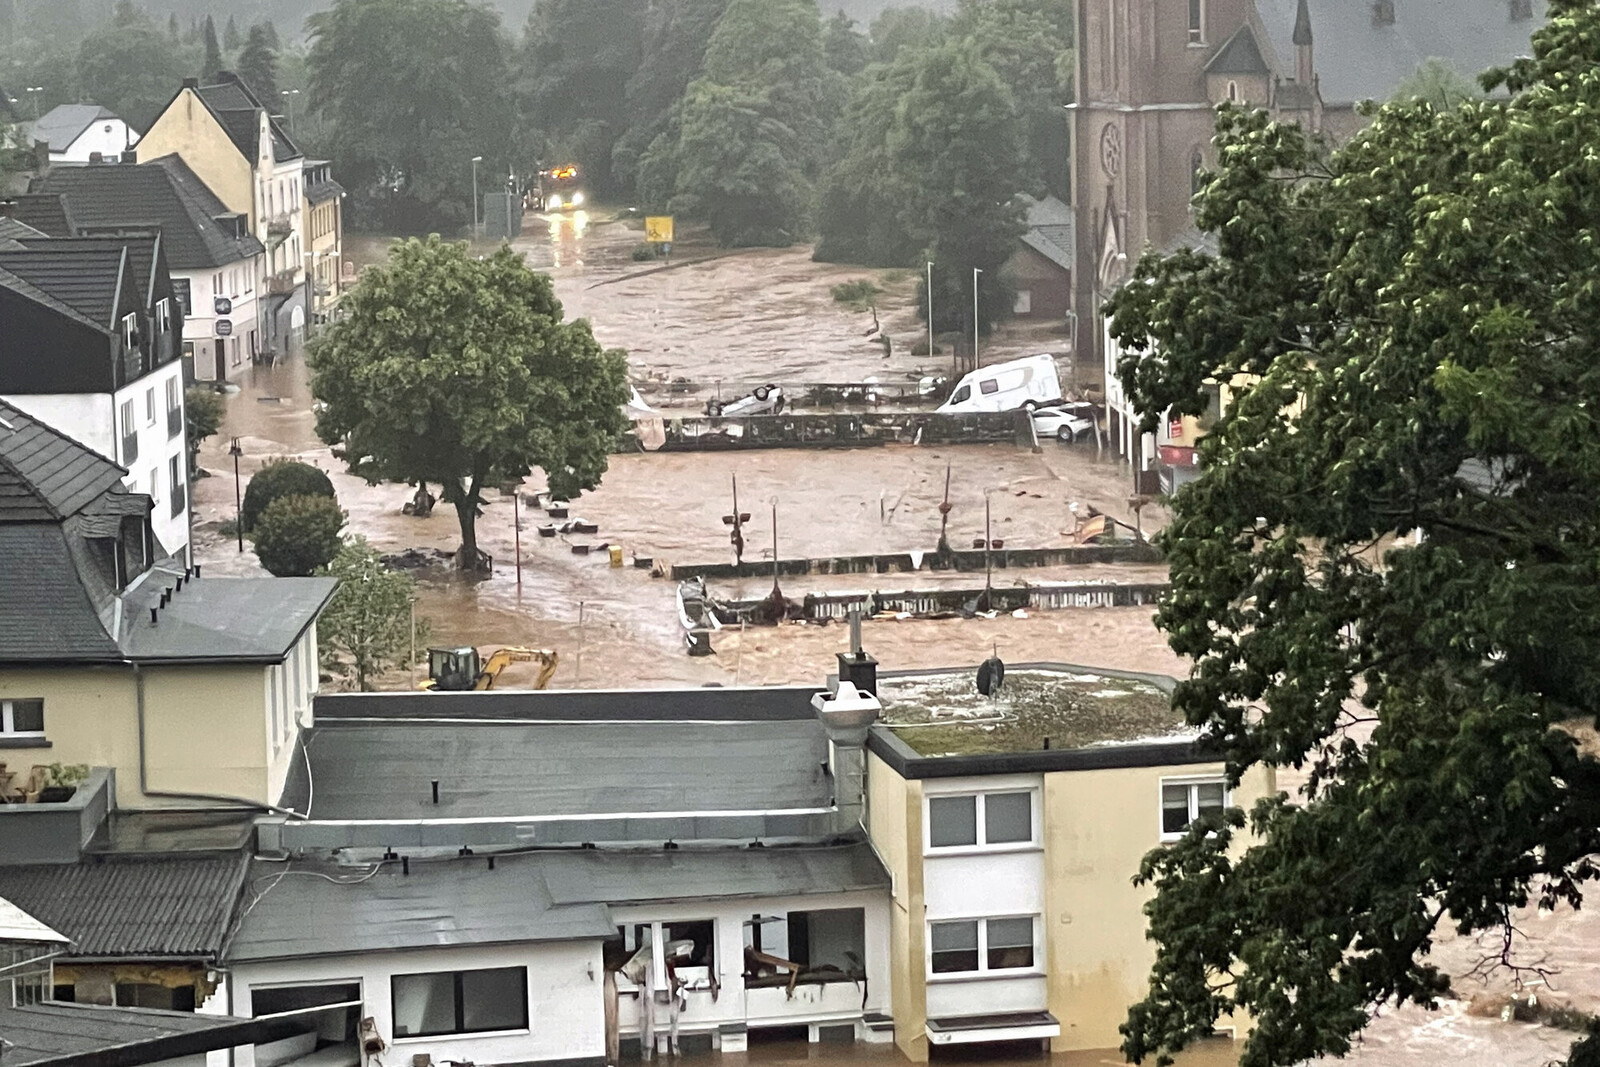 Hochwasser in Gemünd (Eifel) im Juli 2021